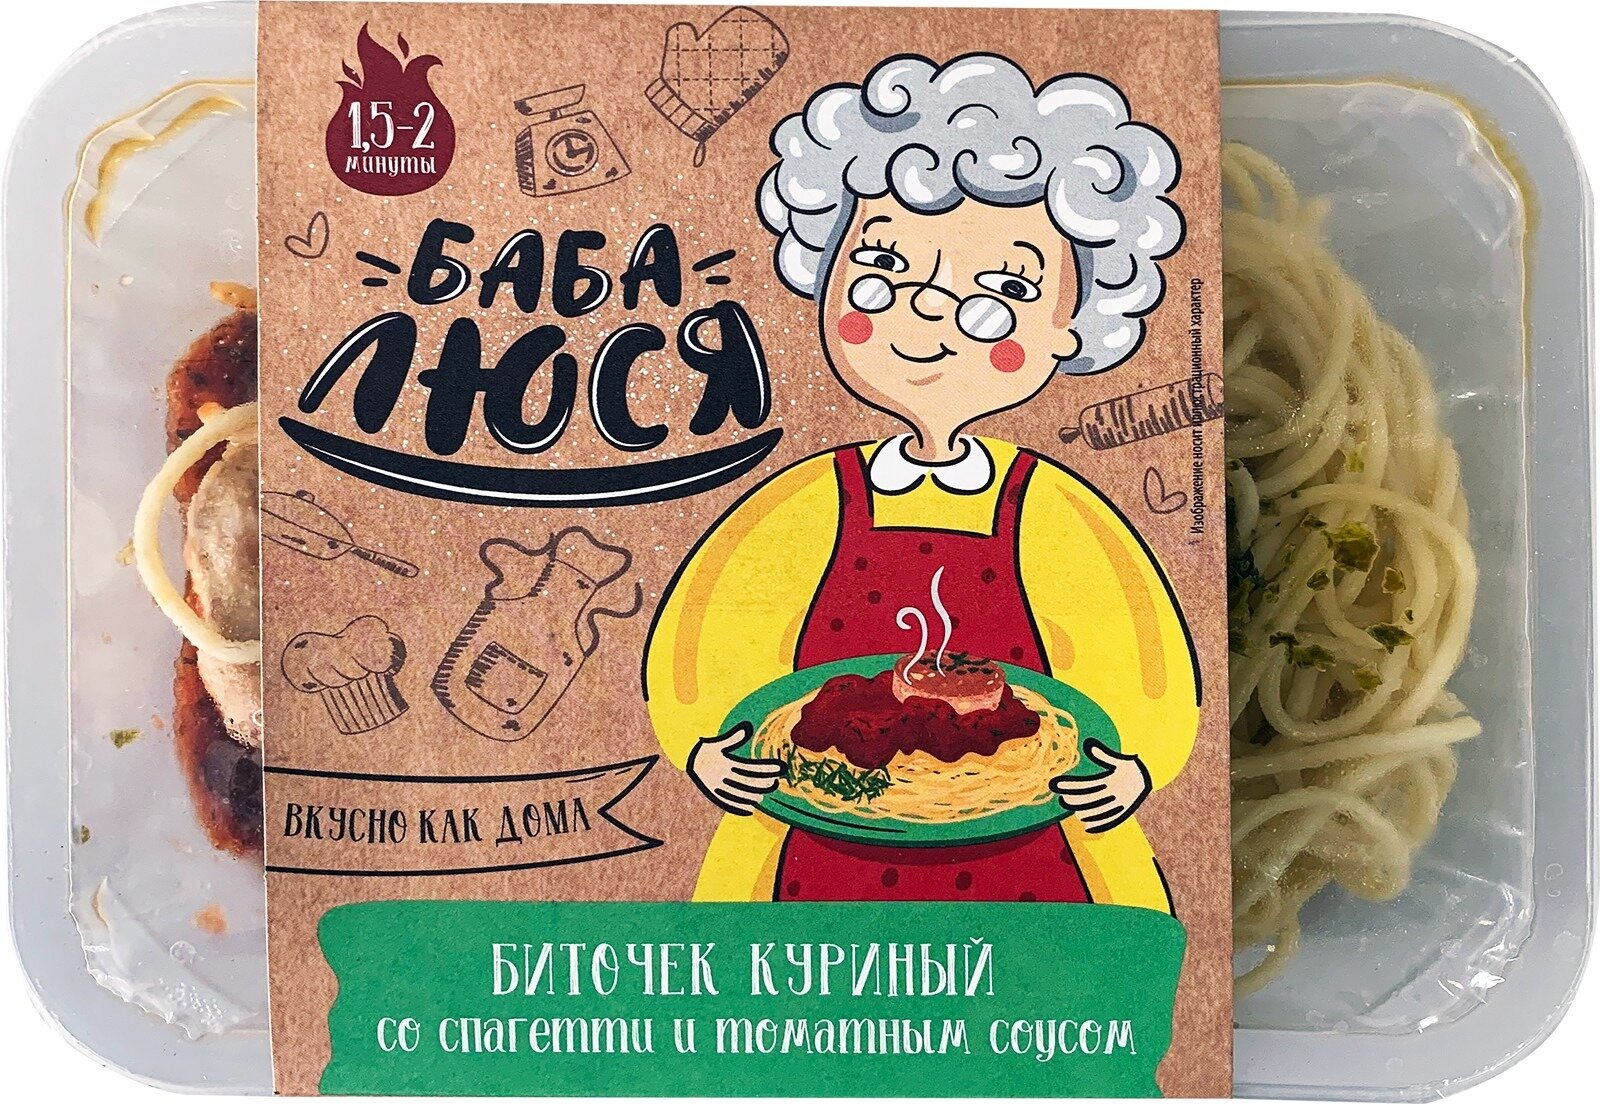 Биточек куриный и спагетти с томатным соустом Баба Люся